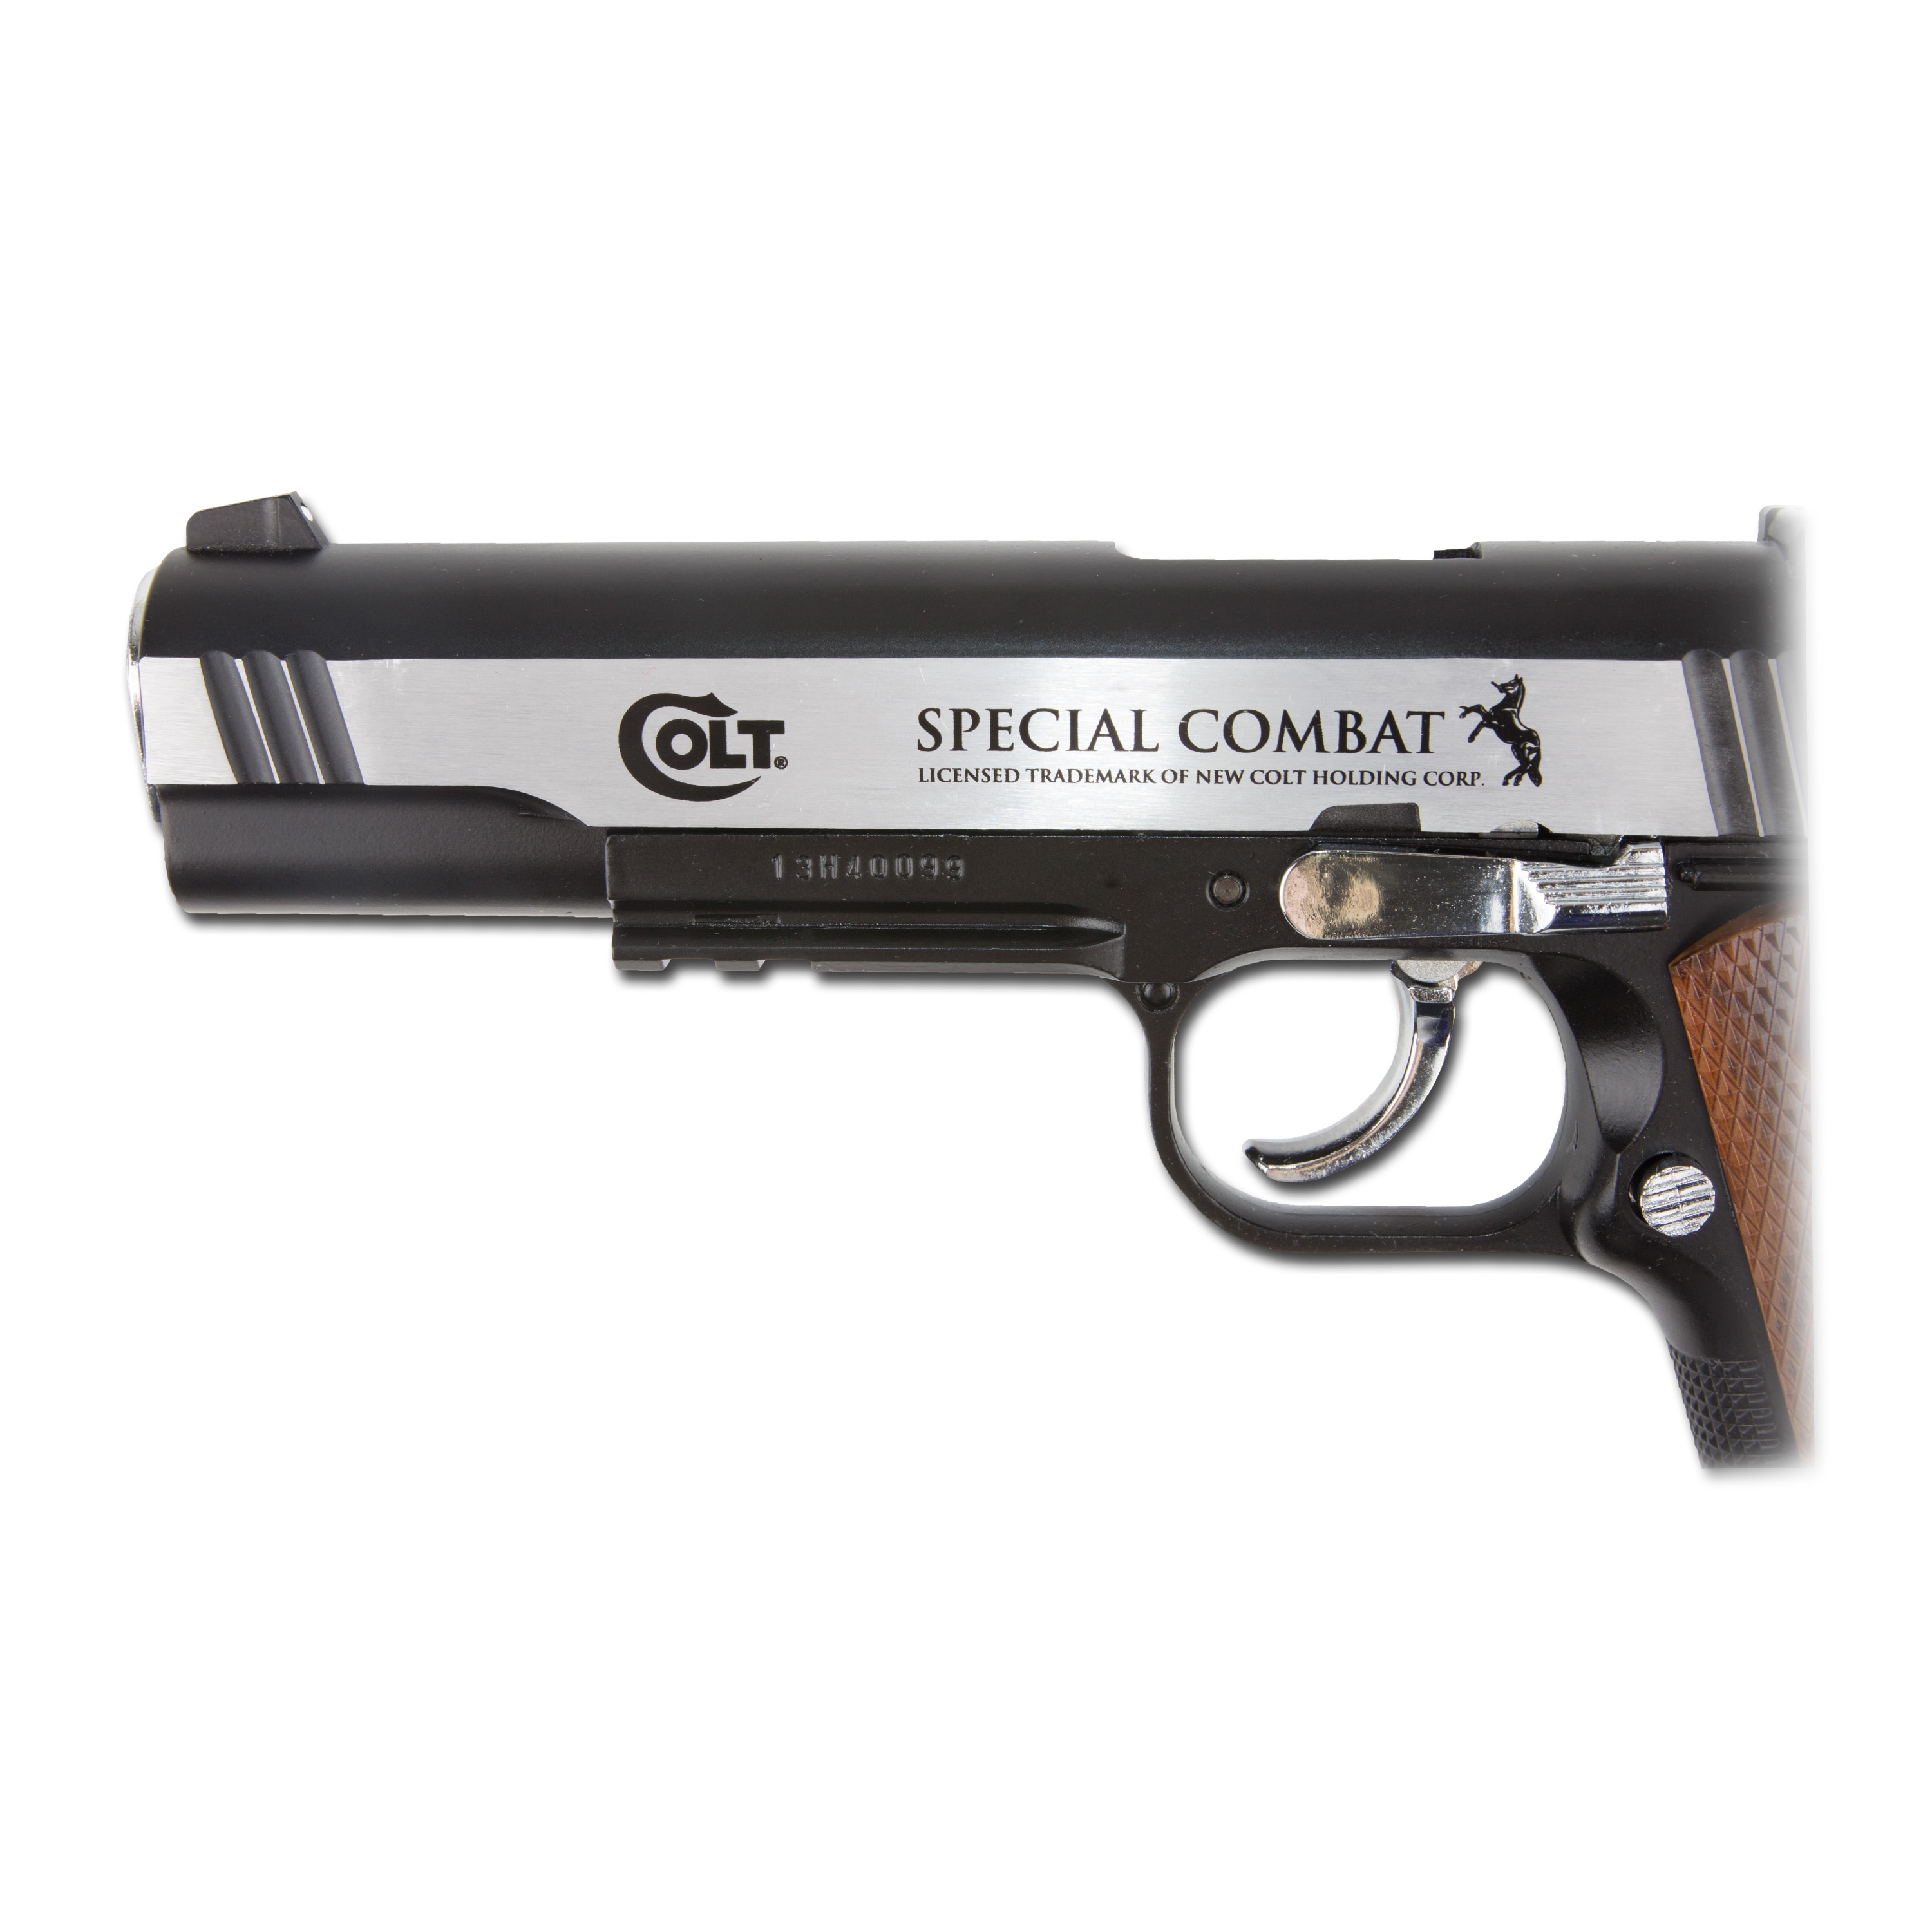 Colt Special Combat Co2 Full Metal, compra online